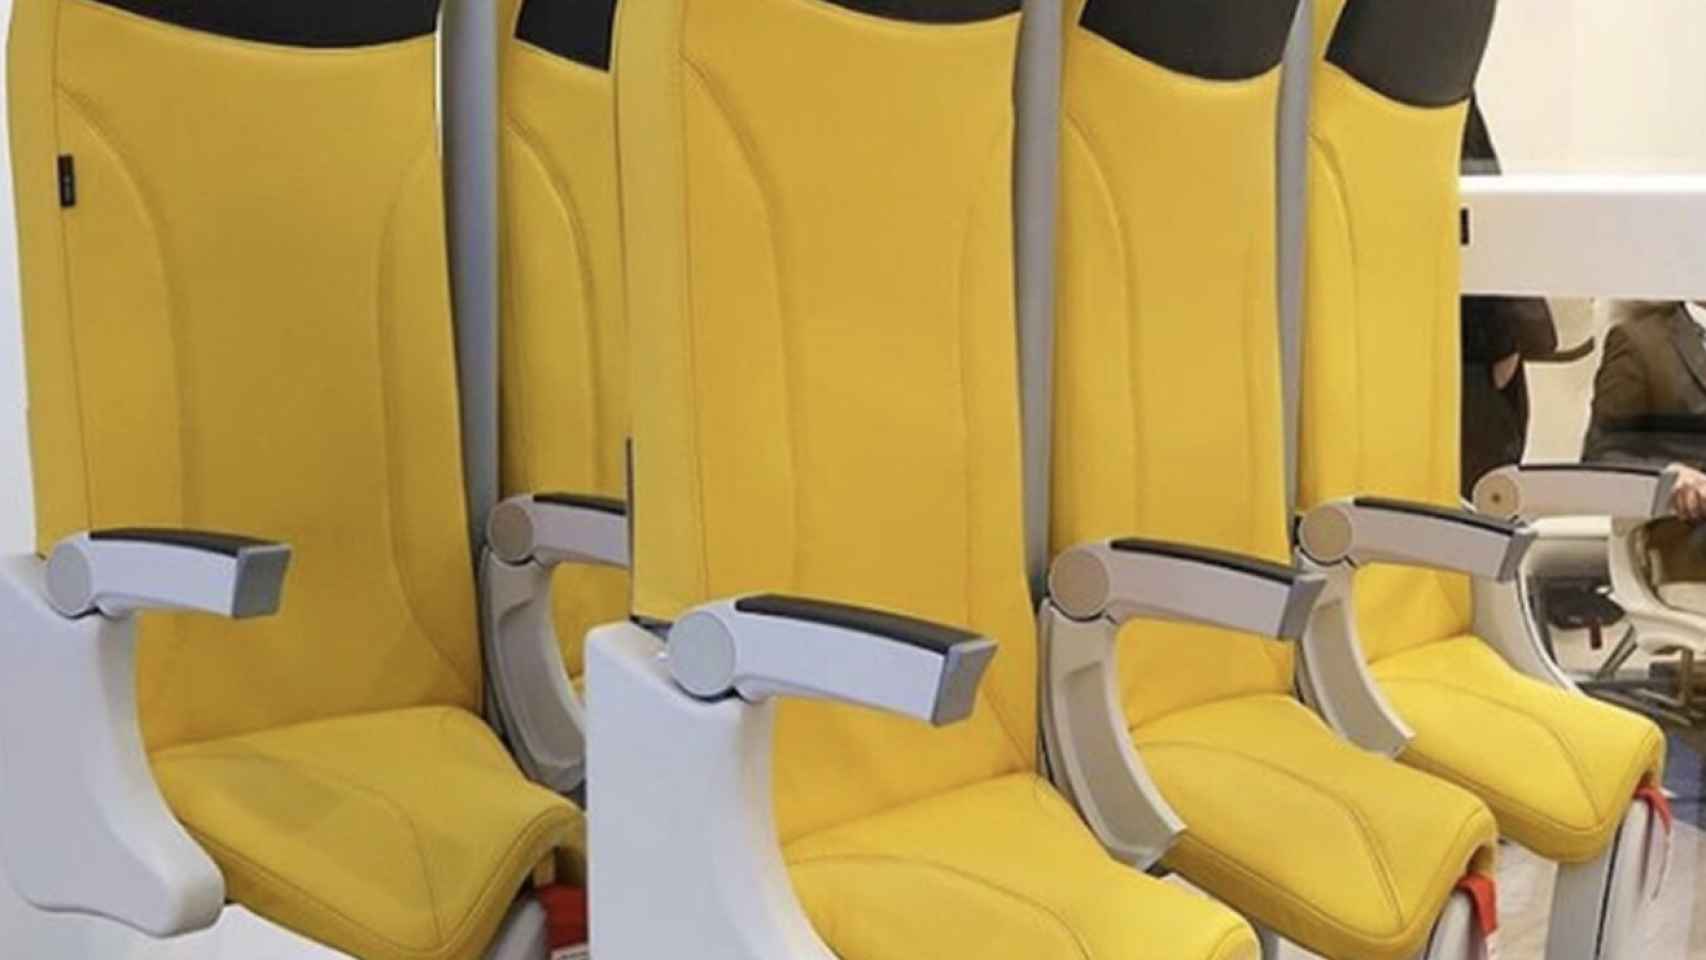 Prototipo de asientos para viajar de pie en un avión.